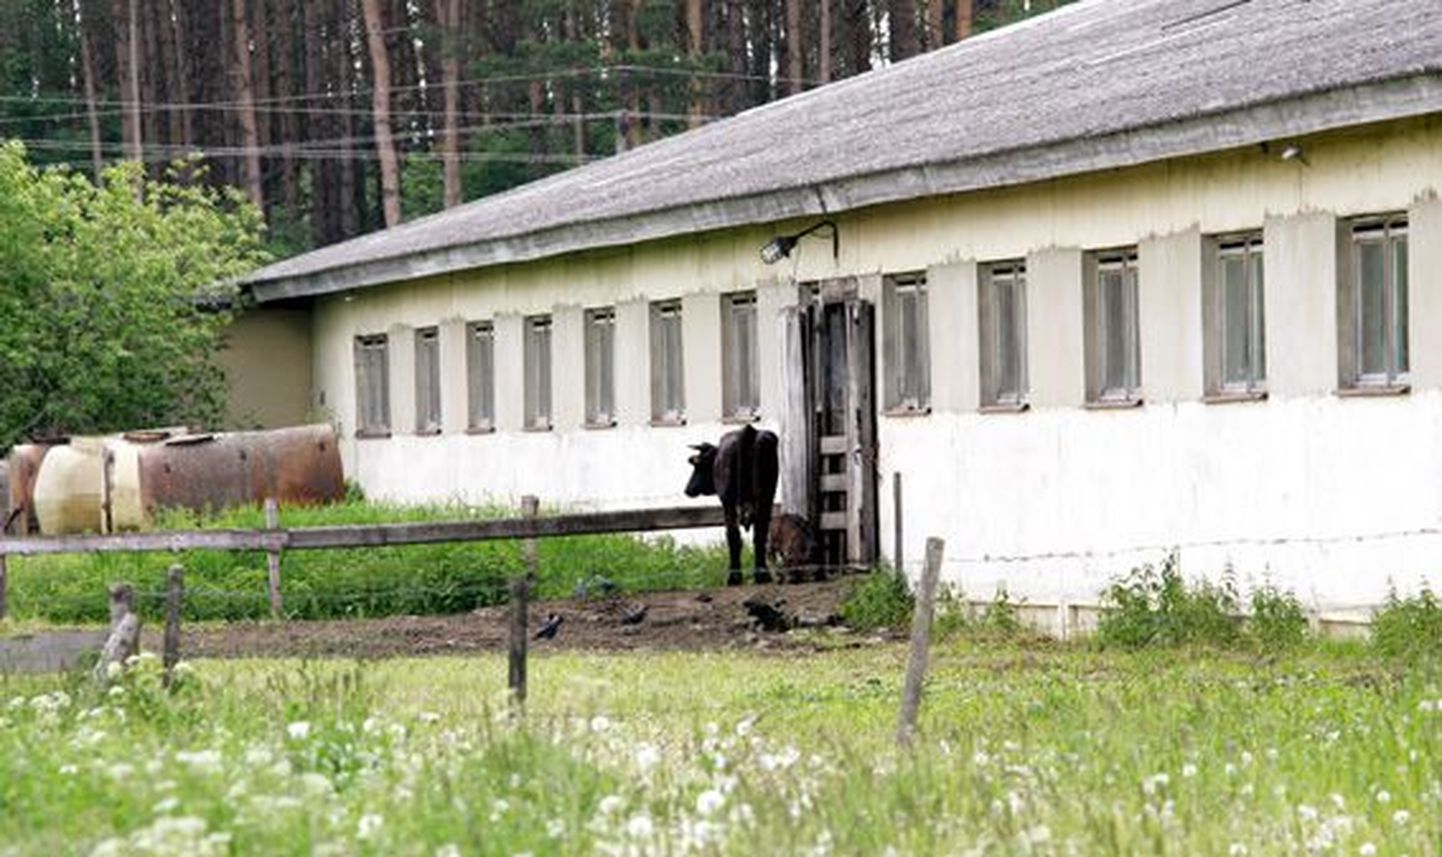 Ubja külas asuvas piimafarmis tahab uus omanik hakata tulevikus pidama lihaveiseid.